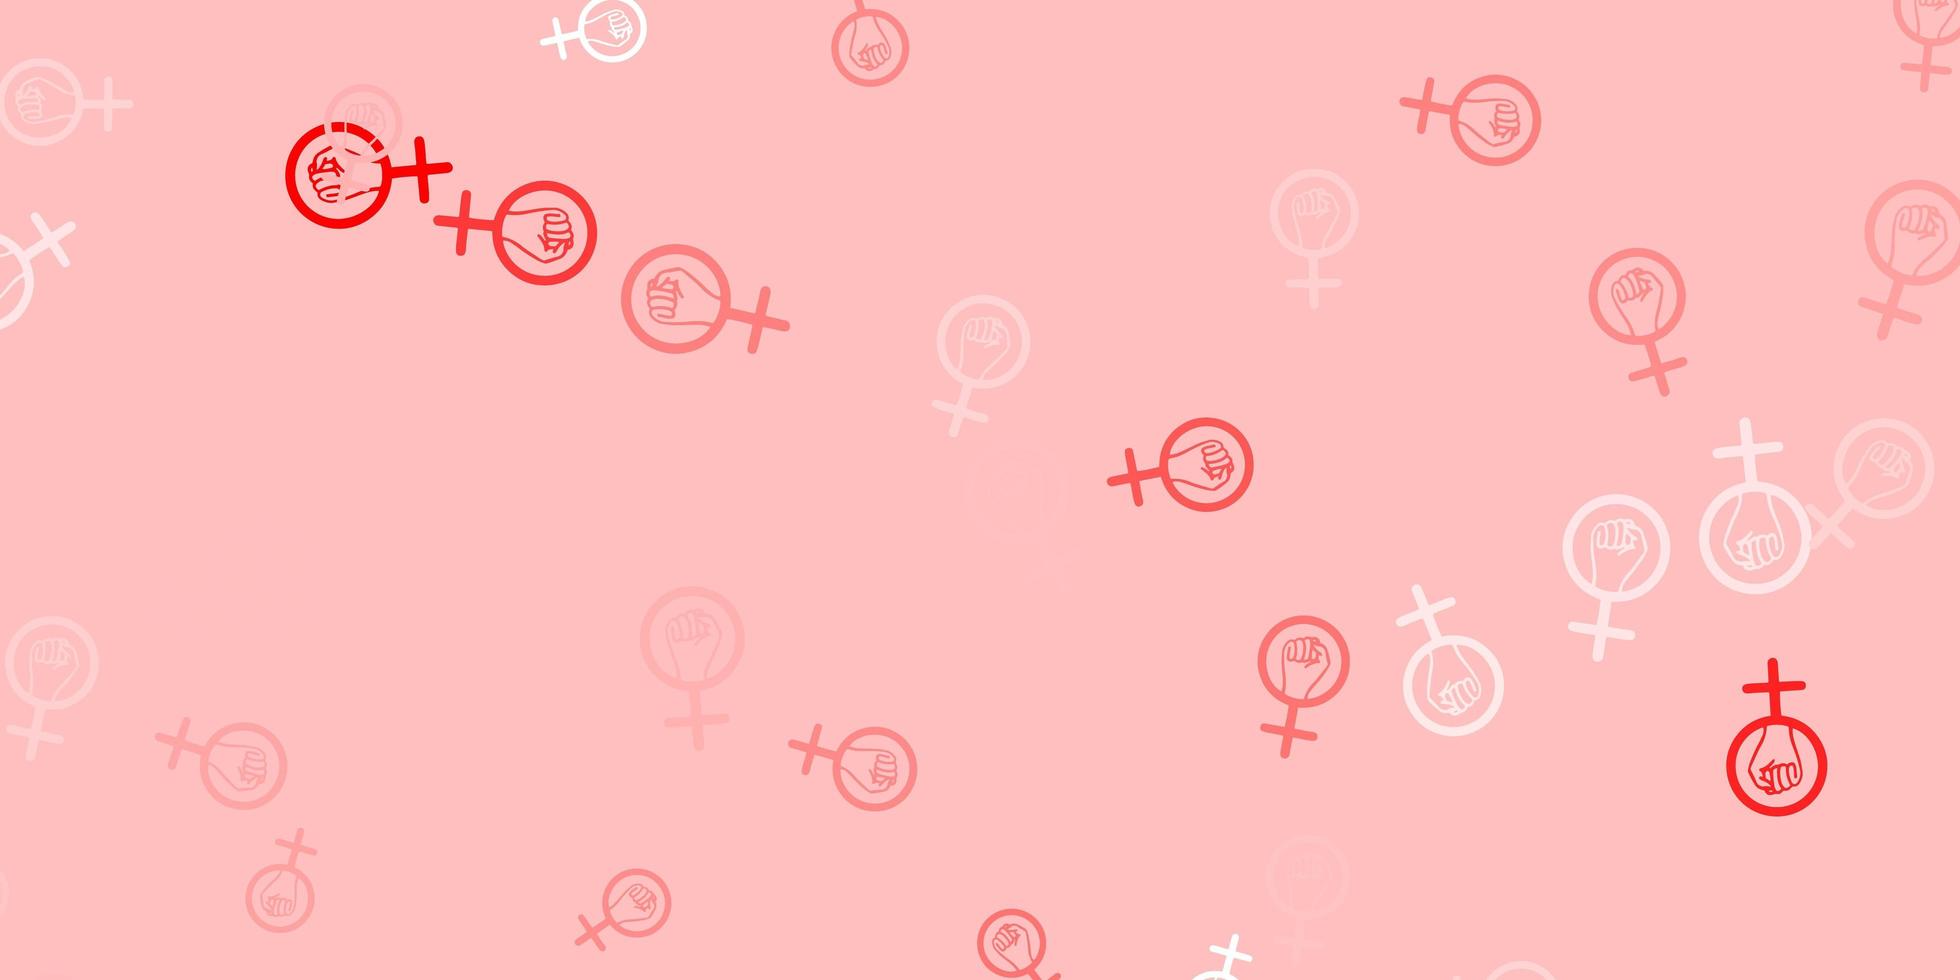 textura de vector rojo claro con símbolos de derechos de las mujeres